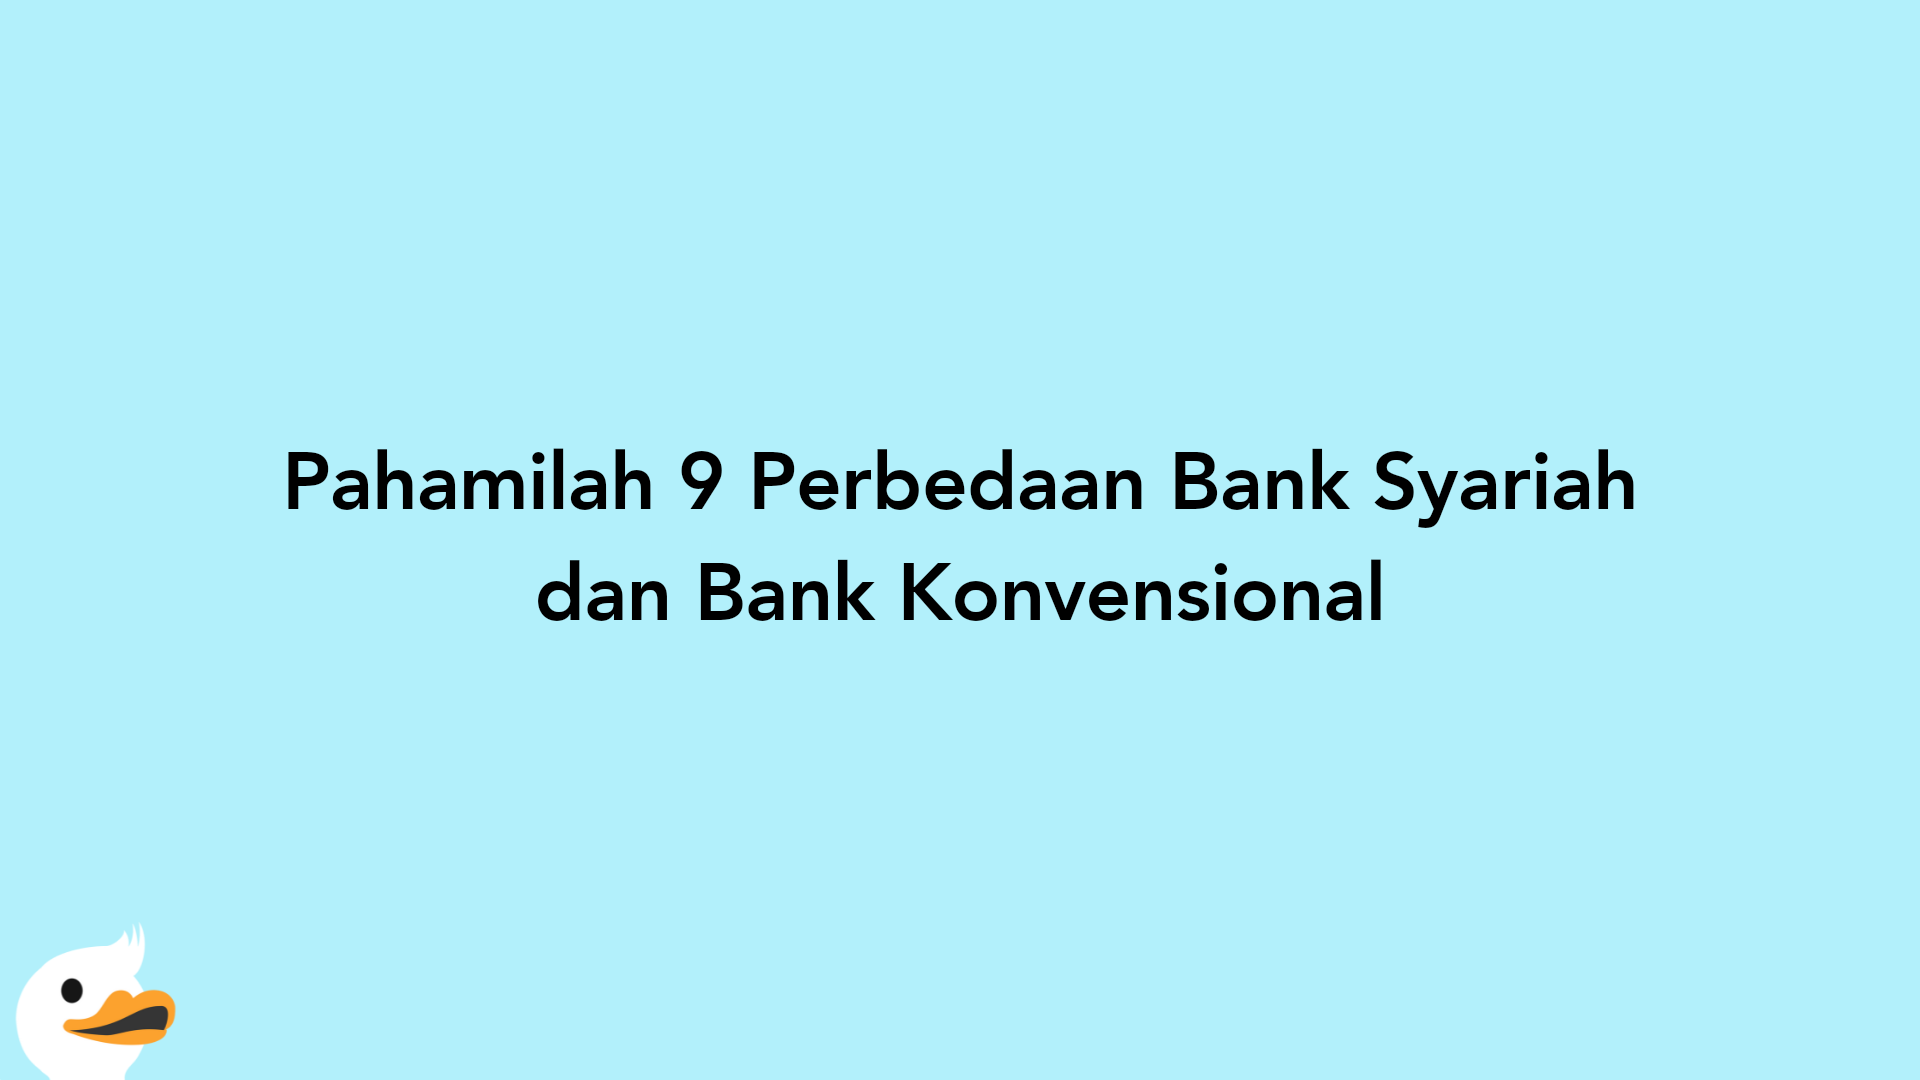 Pahamilah 9 Perbedaan Bank Syariah dan Bank Konvensional